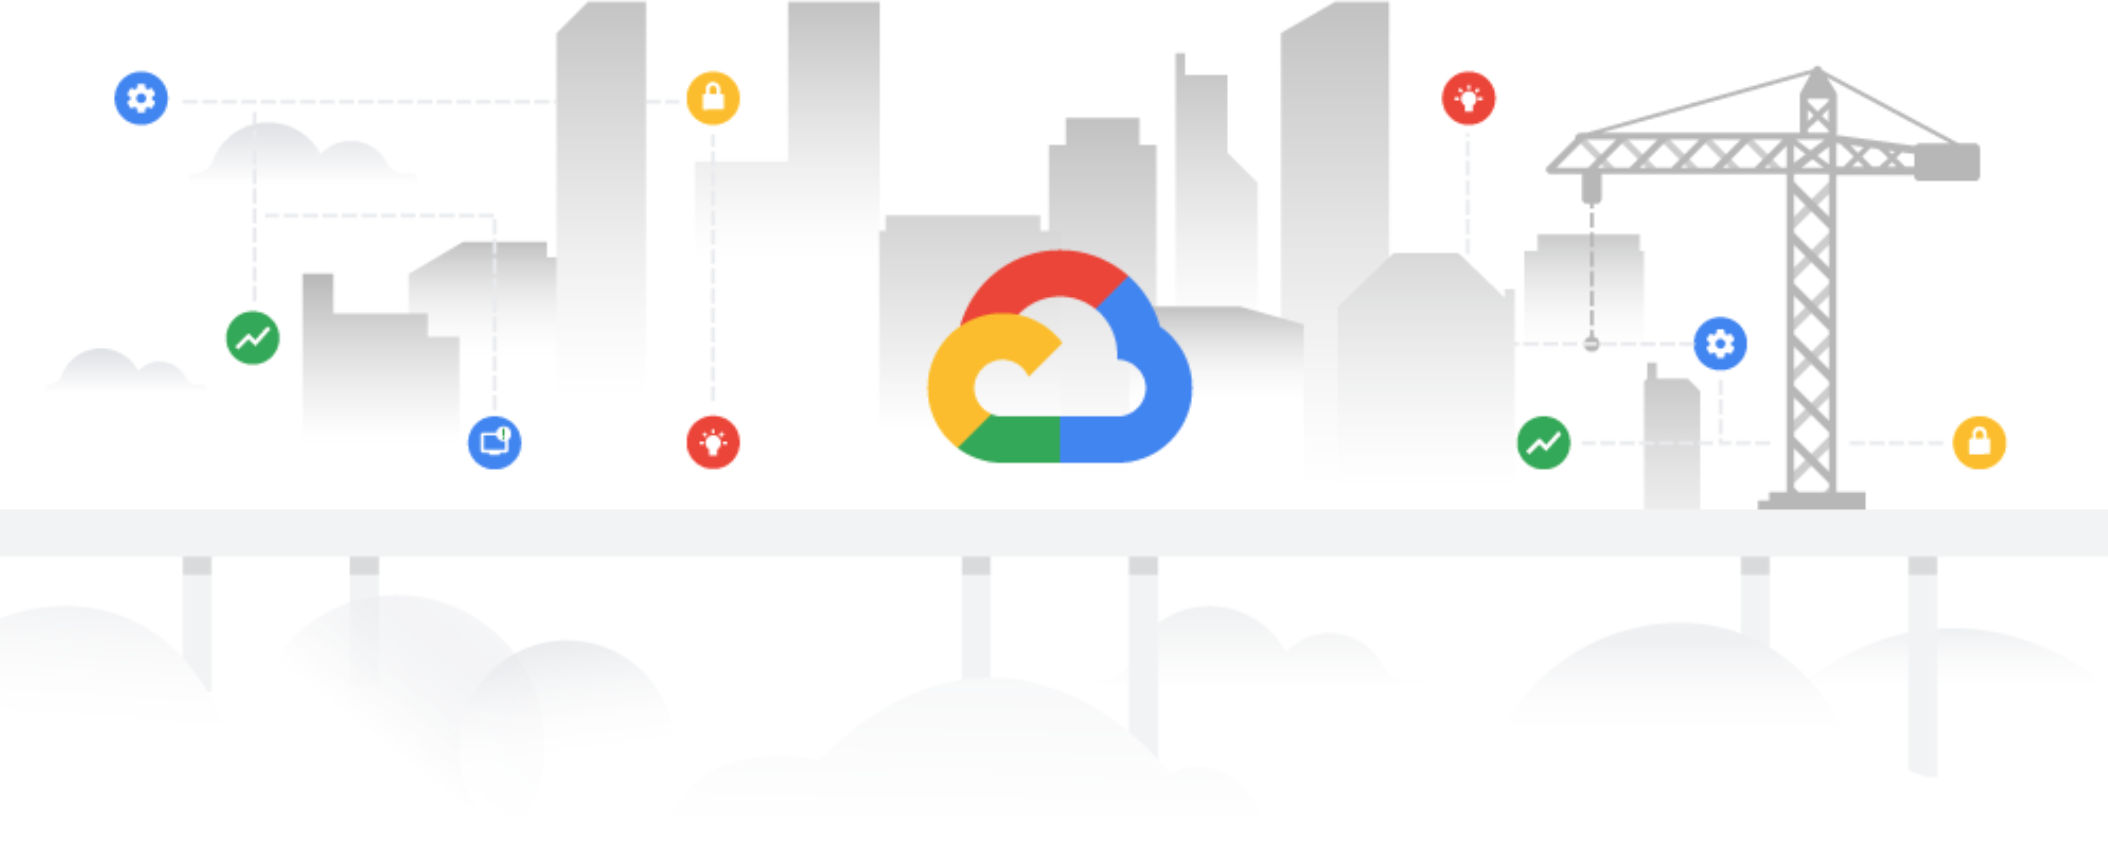 Google Cloud Features Update: October 2021